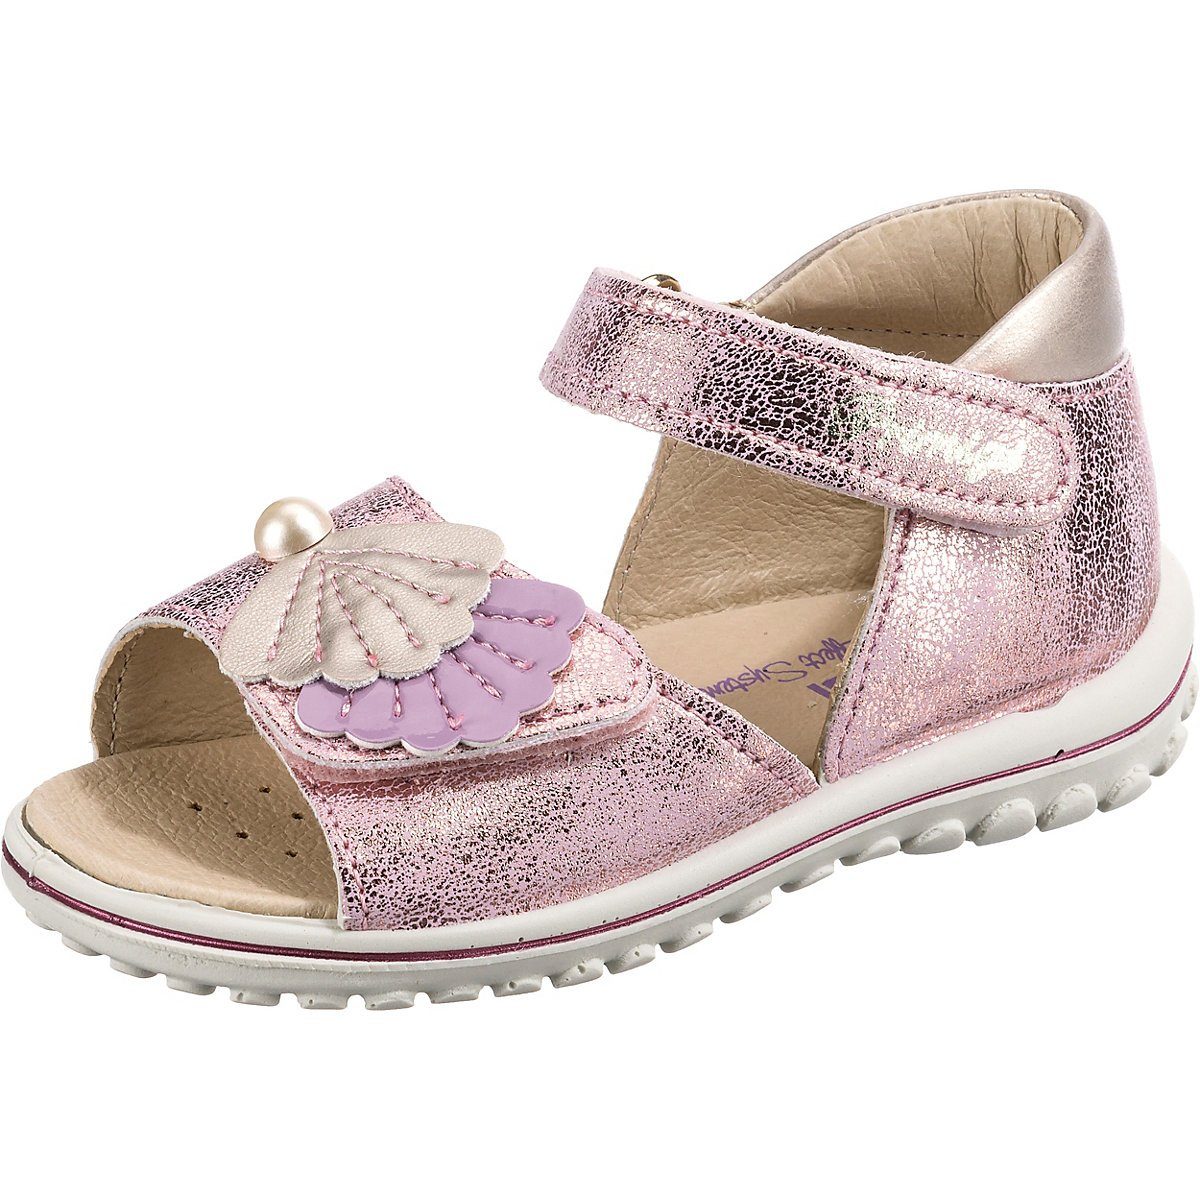 Primigi »Baby Sandalen für Mädchen« Sandale kaufen | OTTO